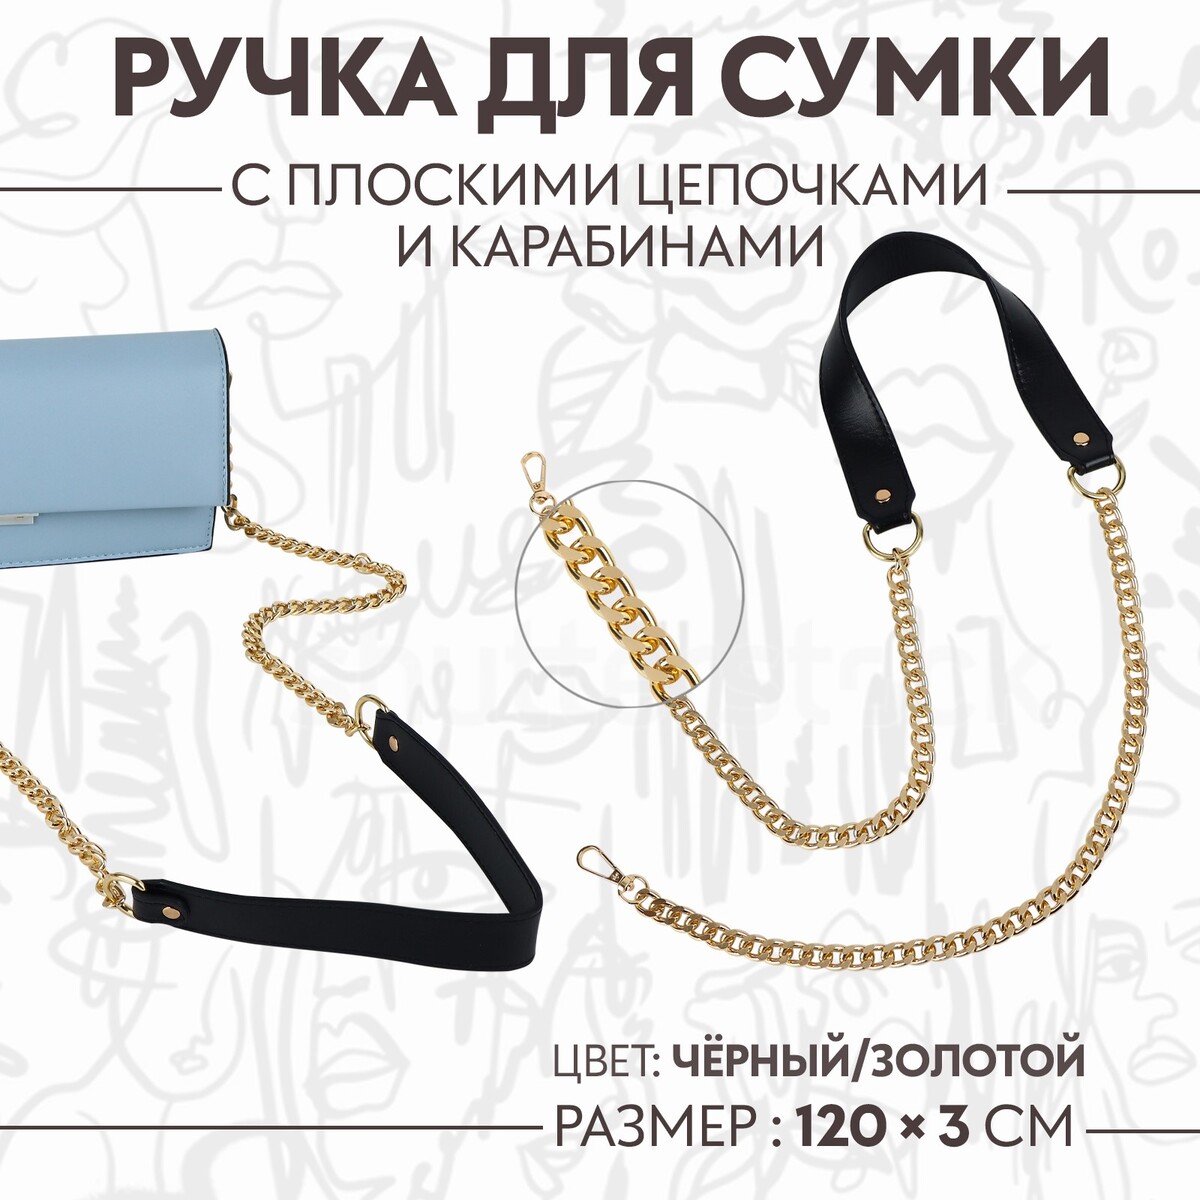 Ручка для сумки, с плоскими цепочками и карабинами, 120 × 3 см, цвет черный/золотой